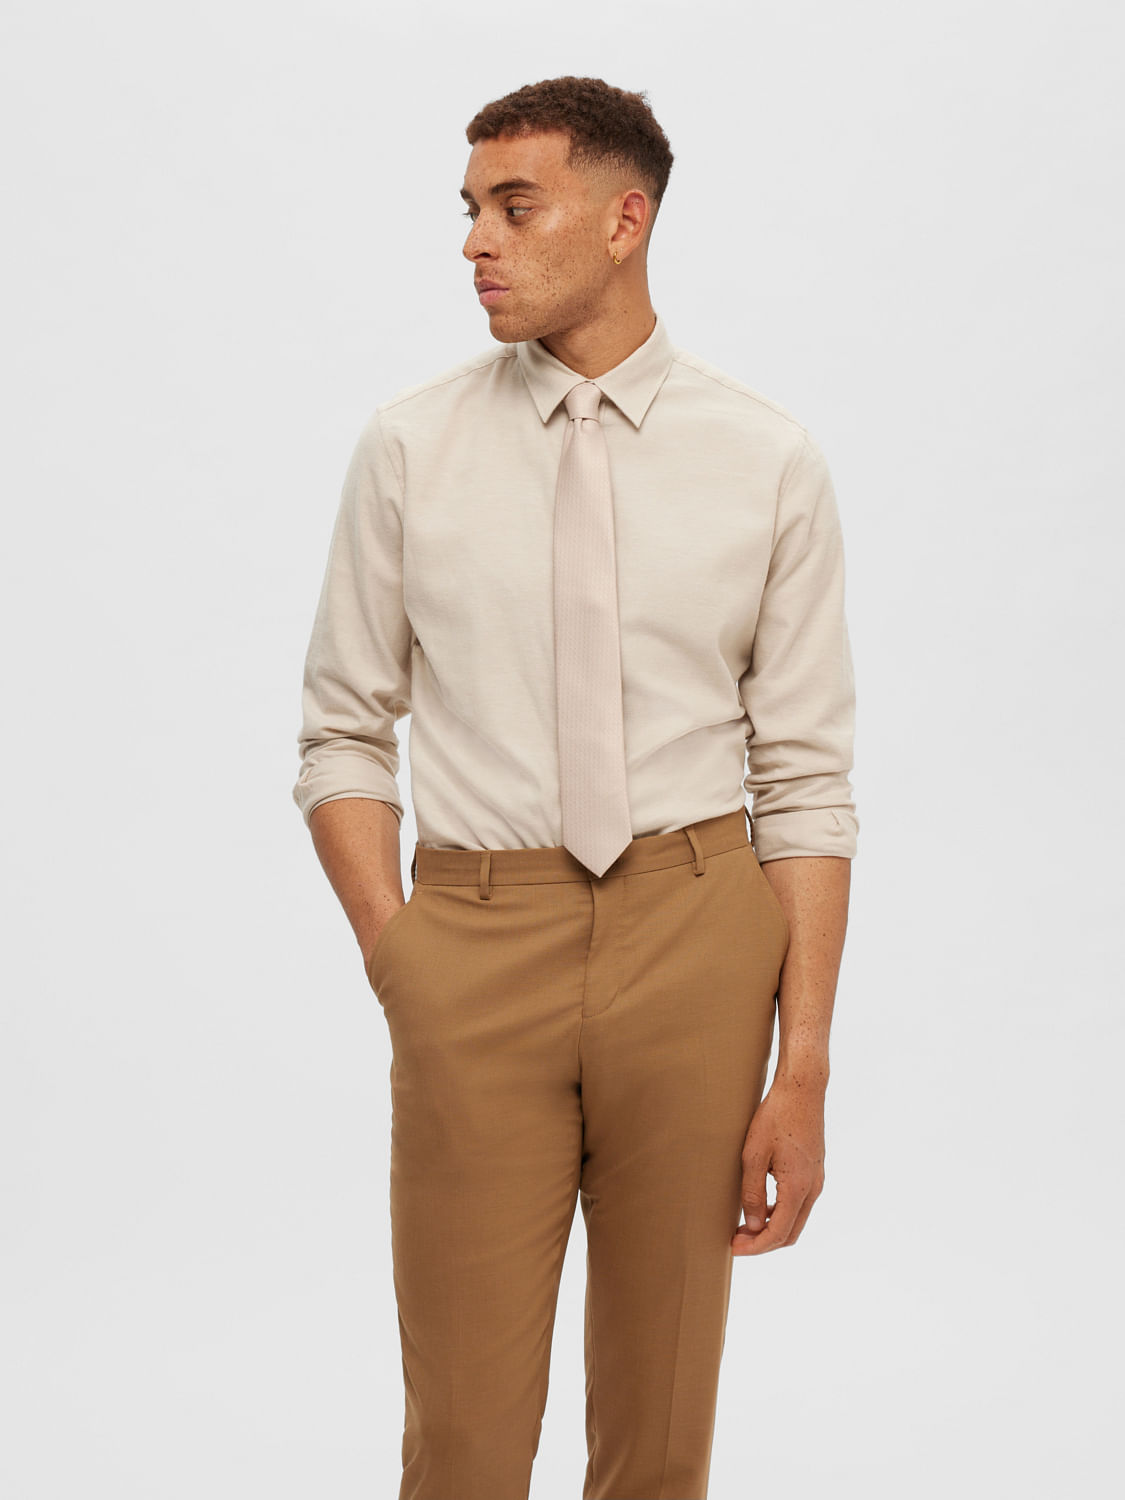 Buy Men Beige Solid Regular Fit Trousers Online - 270932 | Peter England